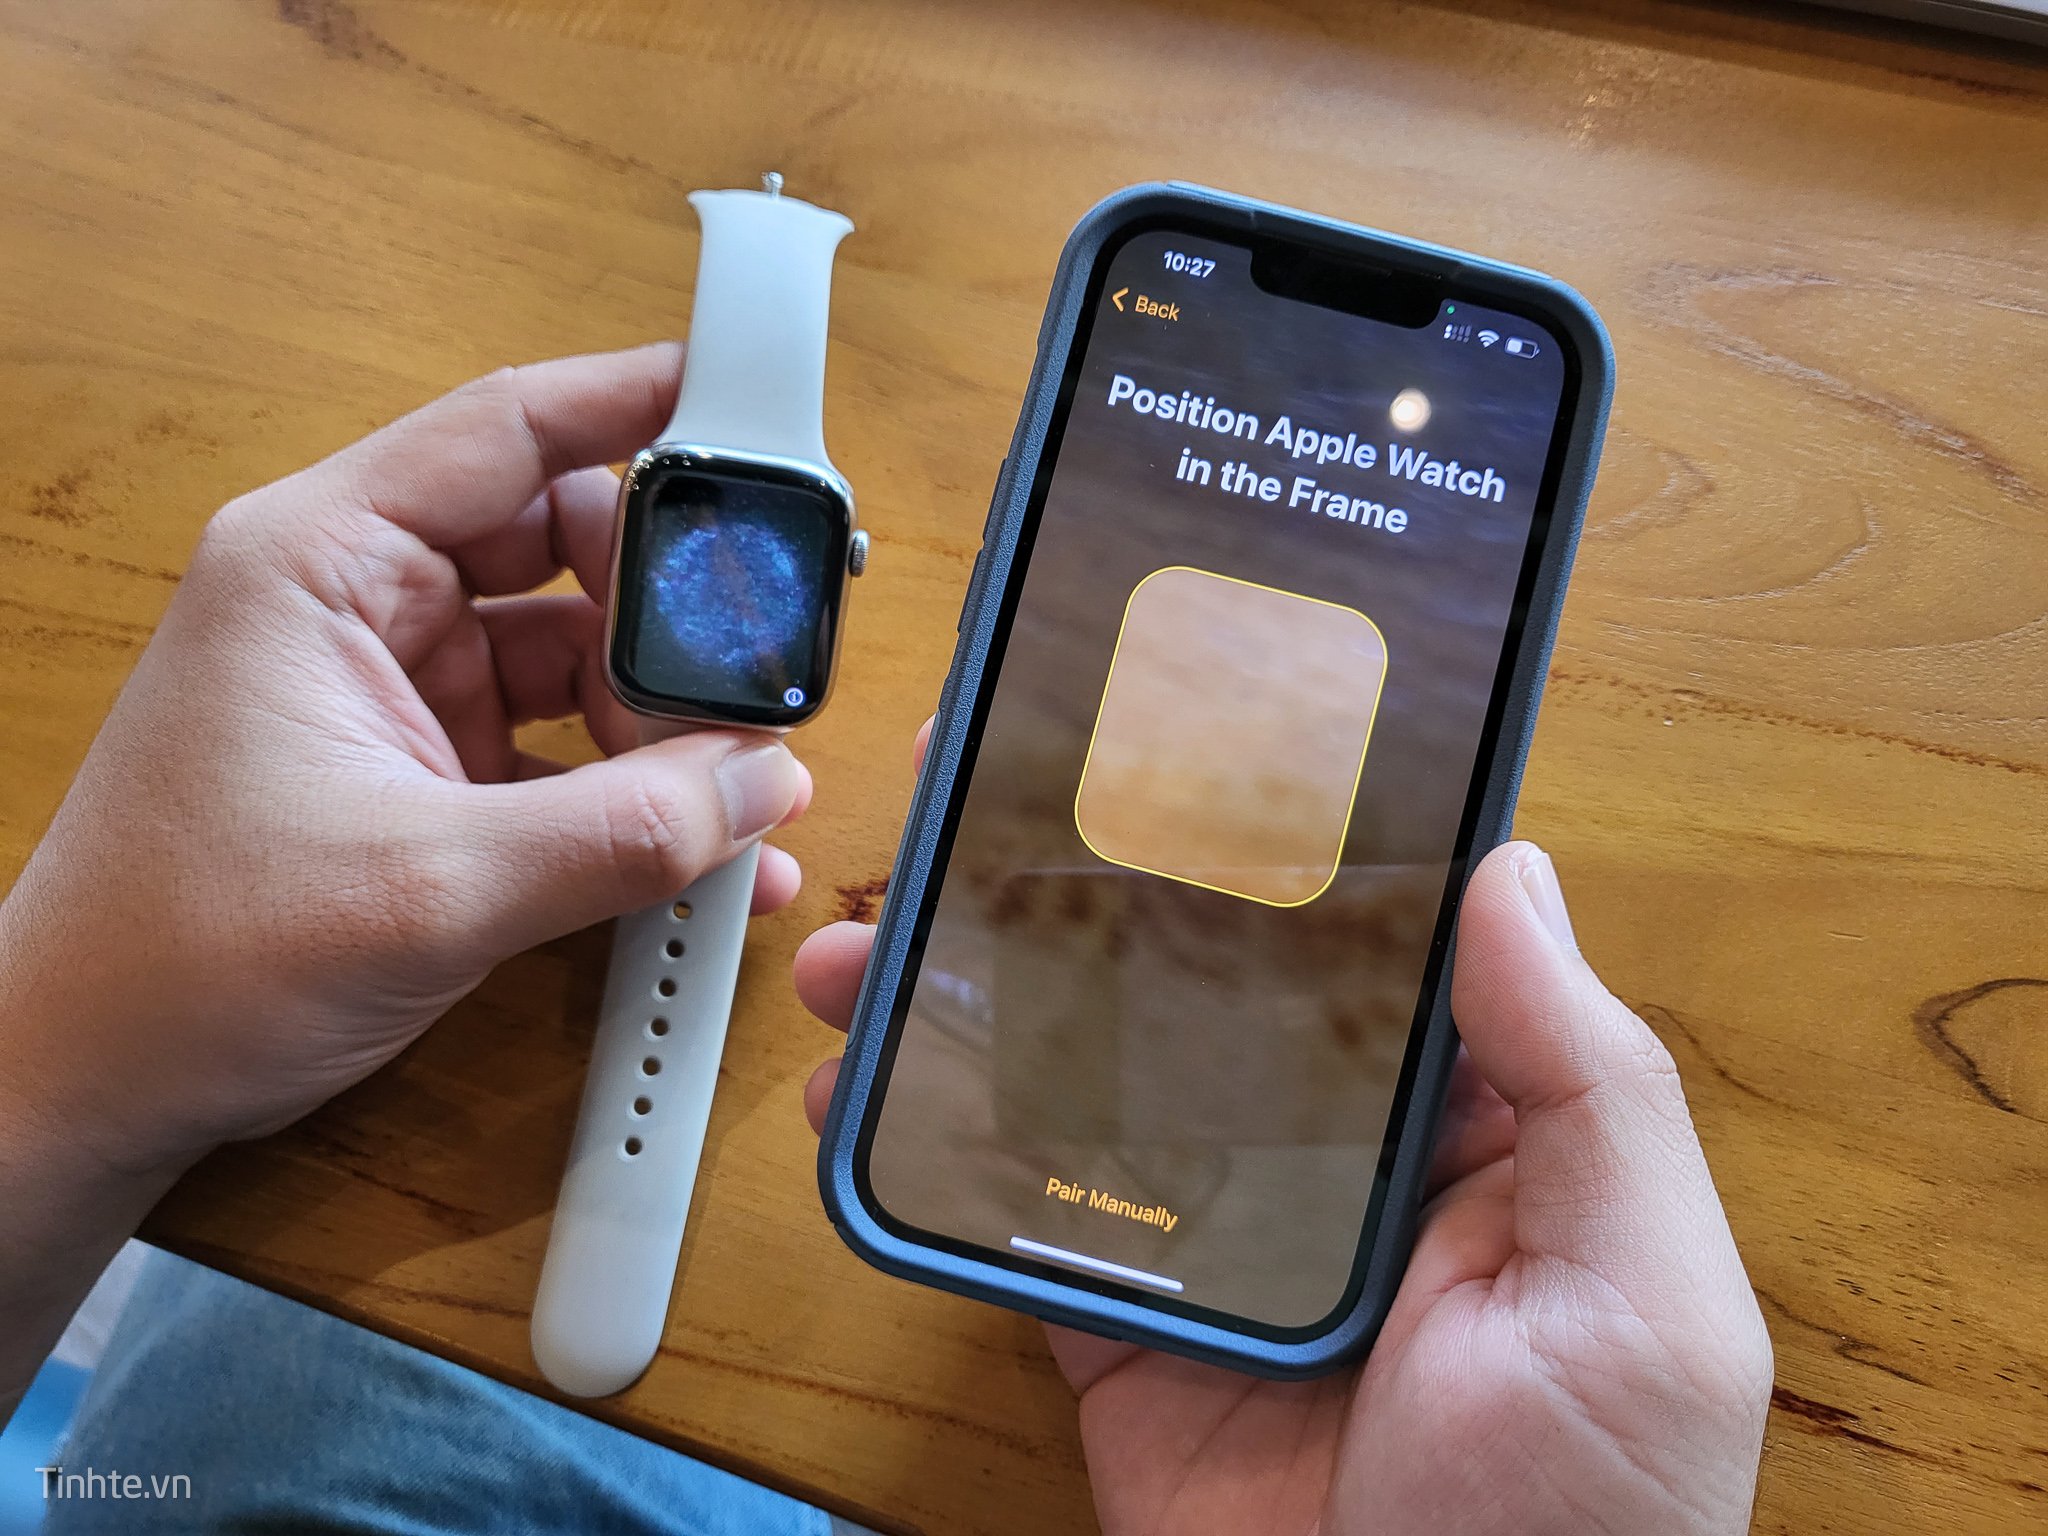 Cảm nhận sự sang trọng, đẳng cấp và tiện dụng với chiếc đồng hồ hiện đại này. Apple Watch được sản xuất với các tính năng độc đáo, giúp bạn dễ dàng quản lý thời gian, theo dõi sức khỏe và thậm chí còn hỗ trợ cho một số bài tập Thể thao nữa đấy.